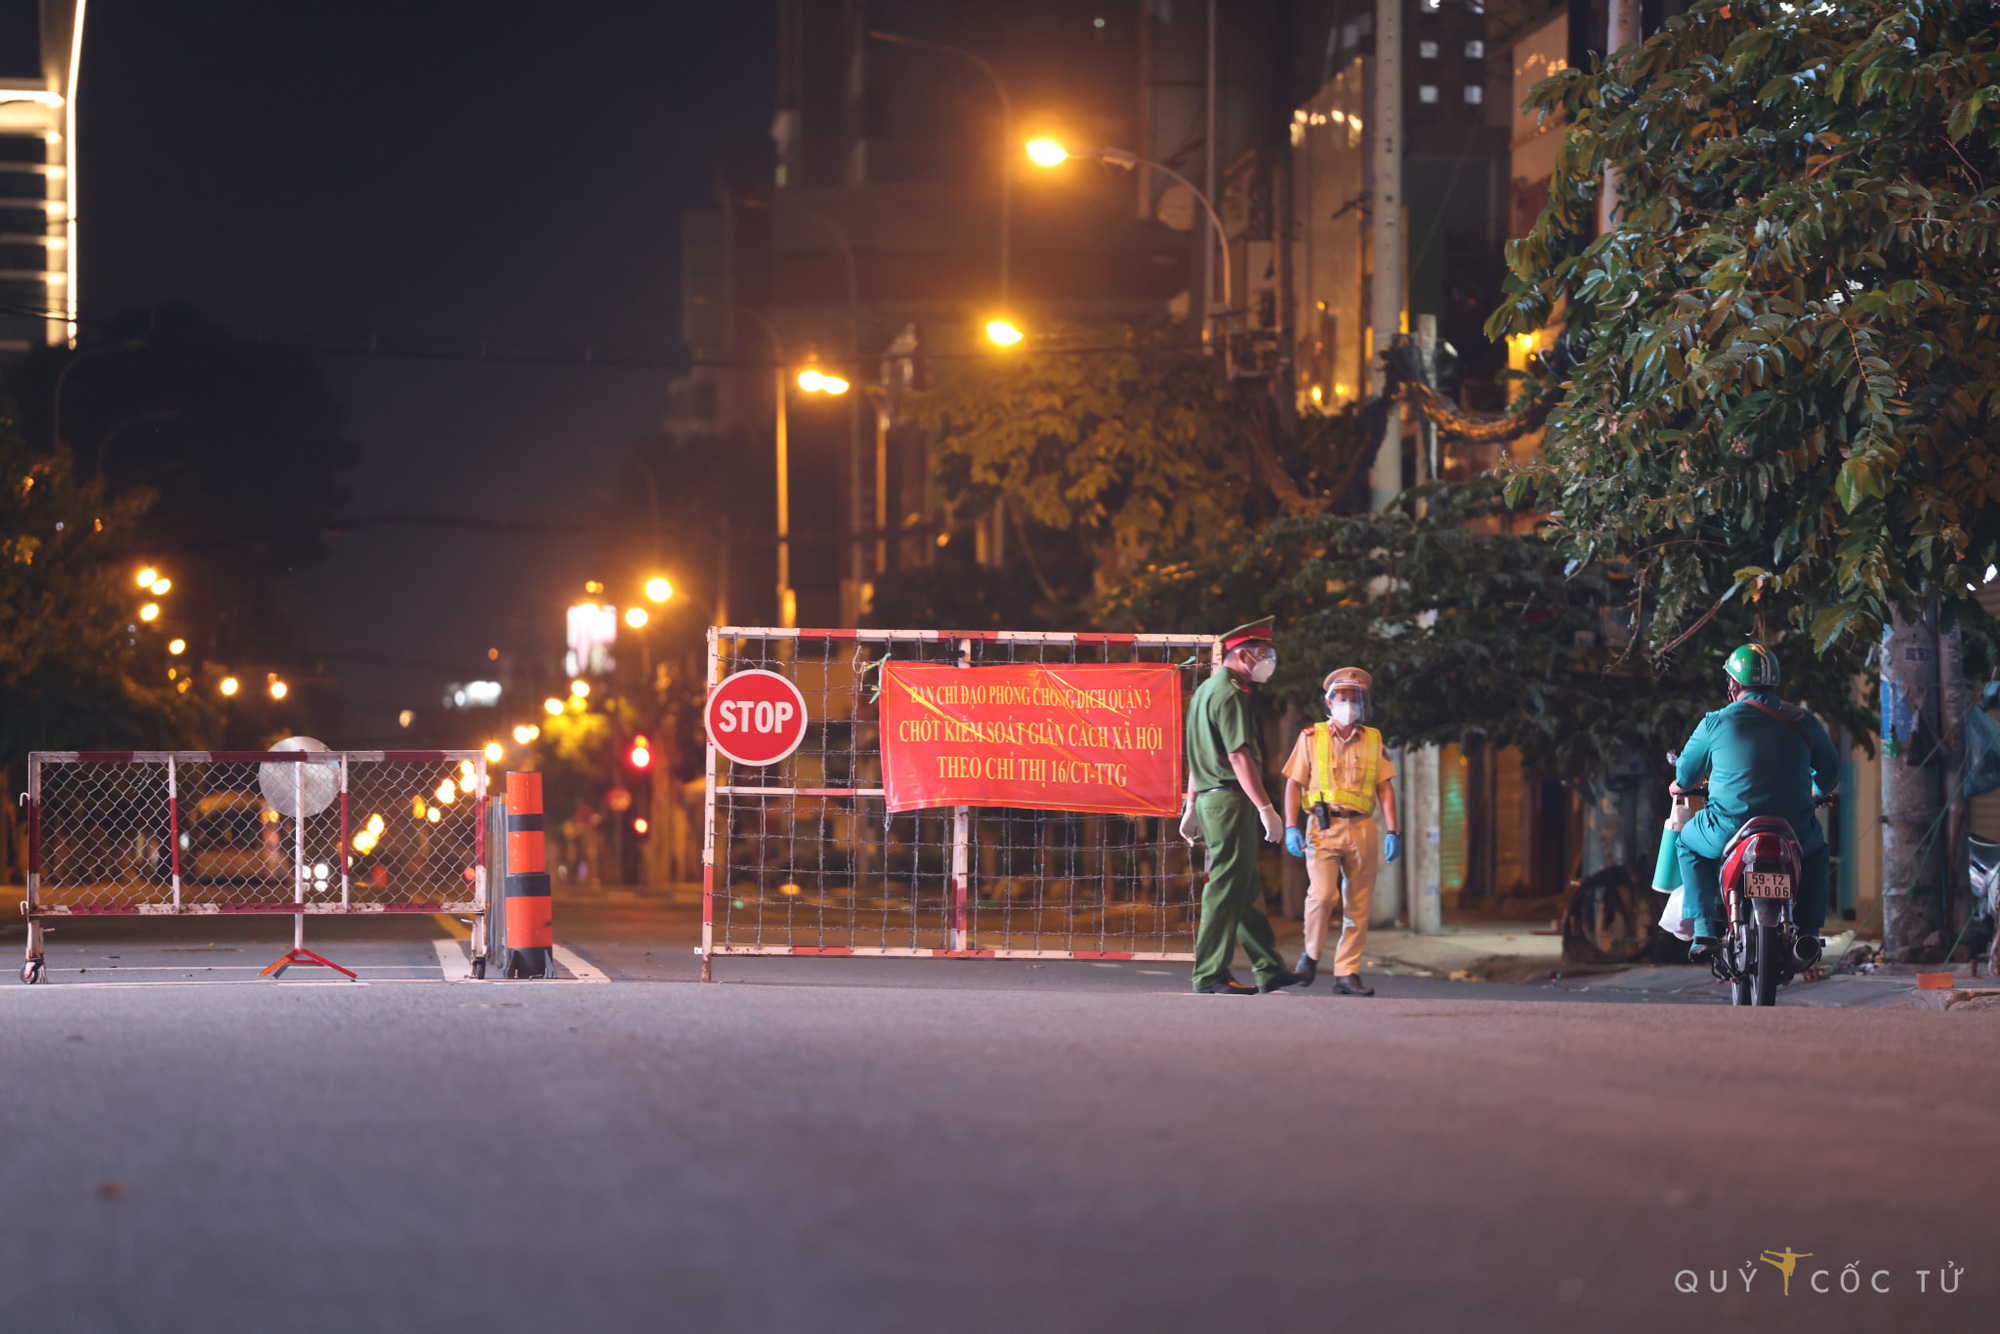 Sài Gòn lấp lánh ánh đèn trong đêm làm say lòng khách du lịch